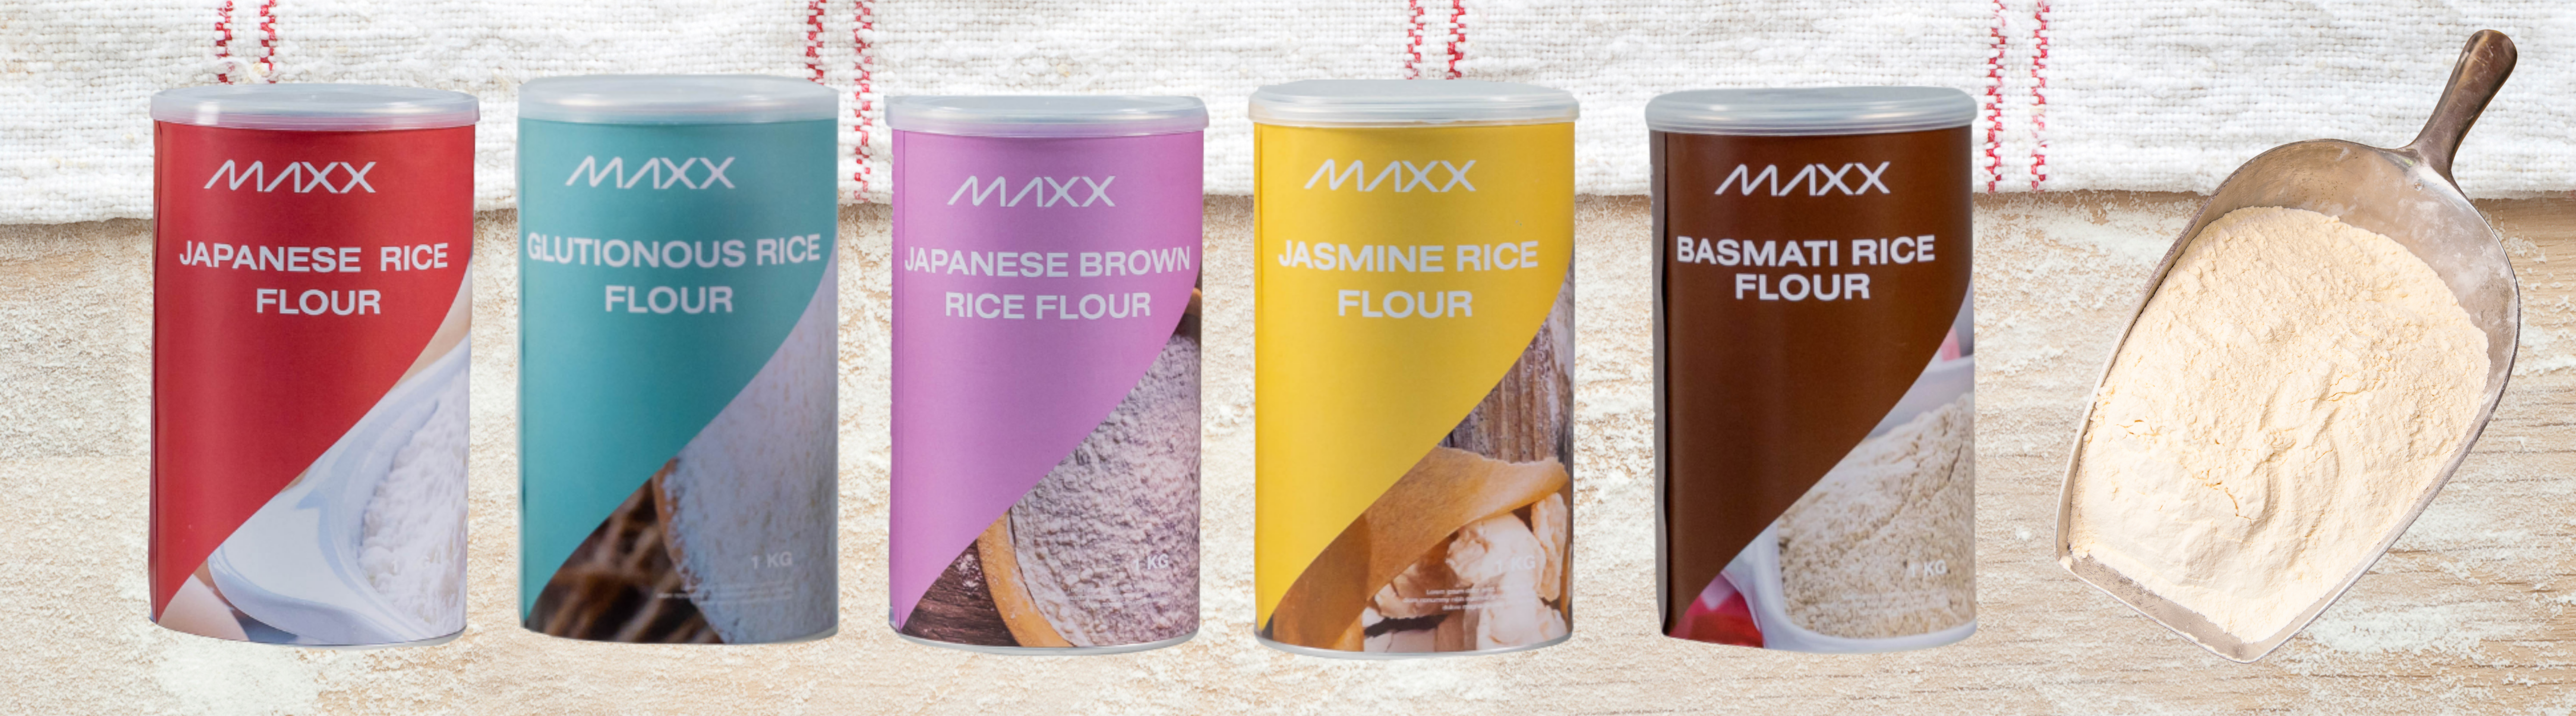 Maxx Rice Flour5